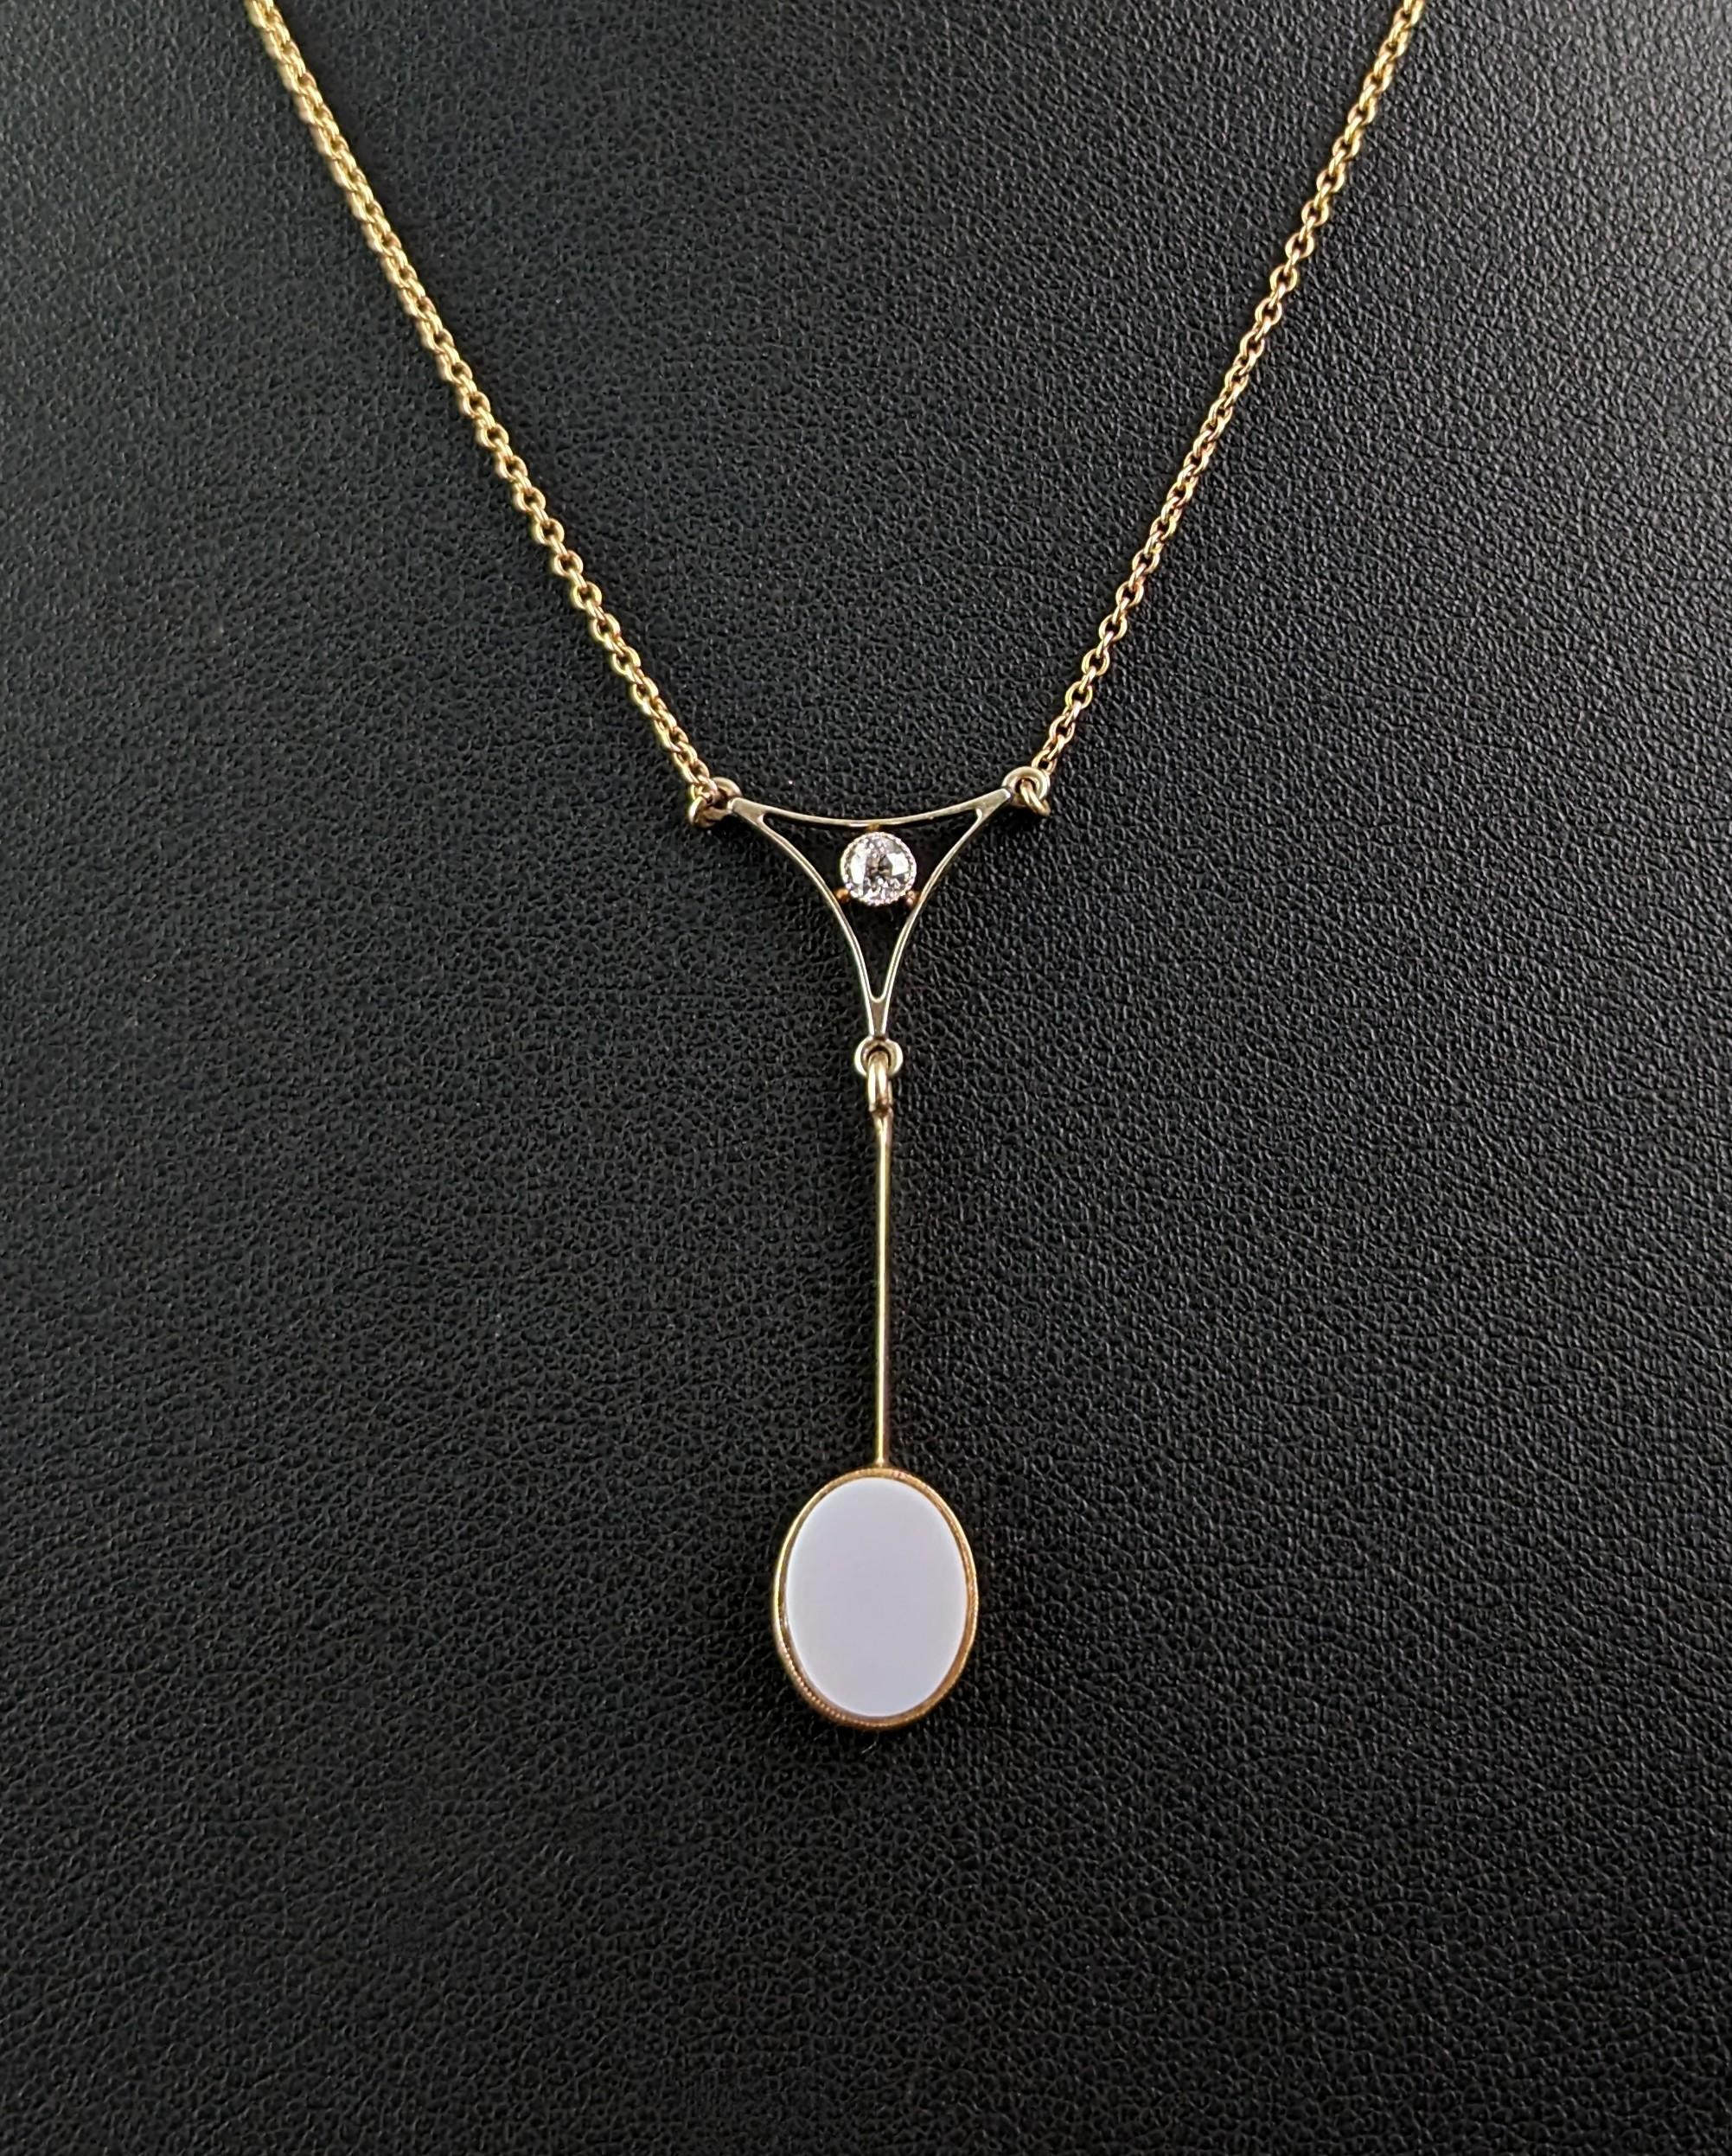 Antique Art Deco drop pendant necklace, Diamond and Sardonyx, 9kt gold  For Sale 3